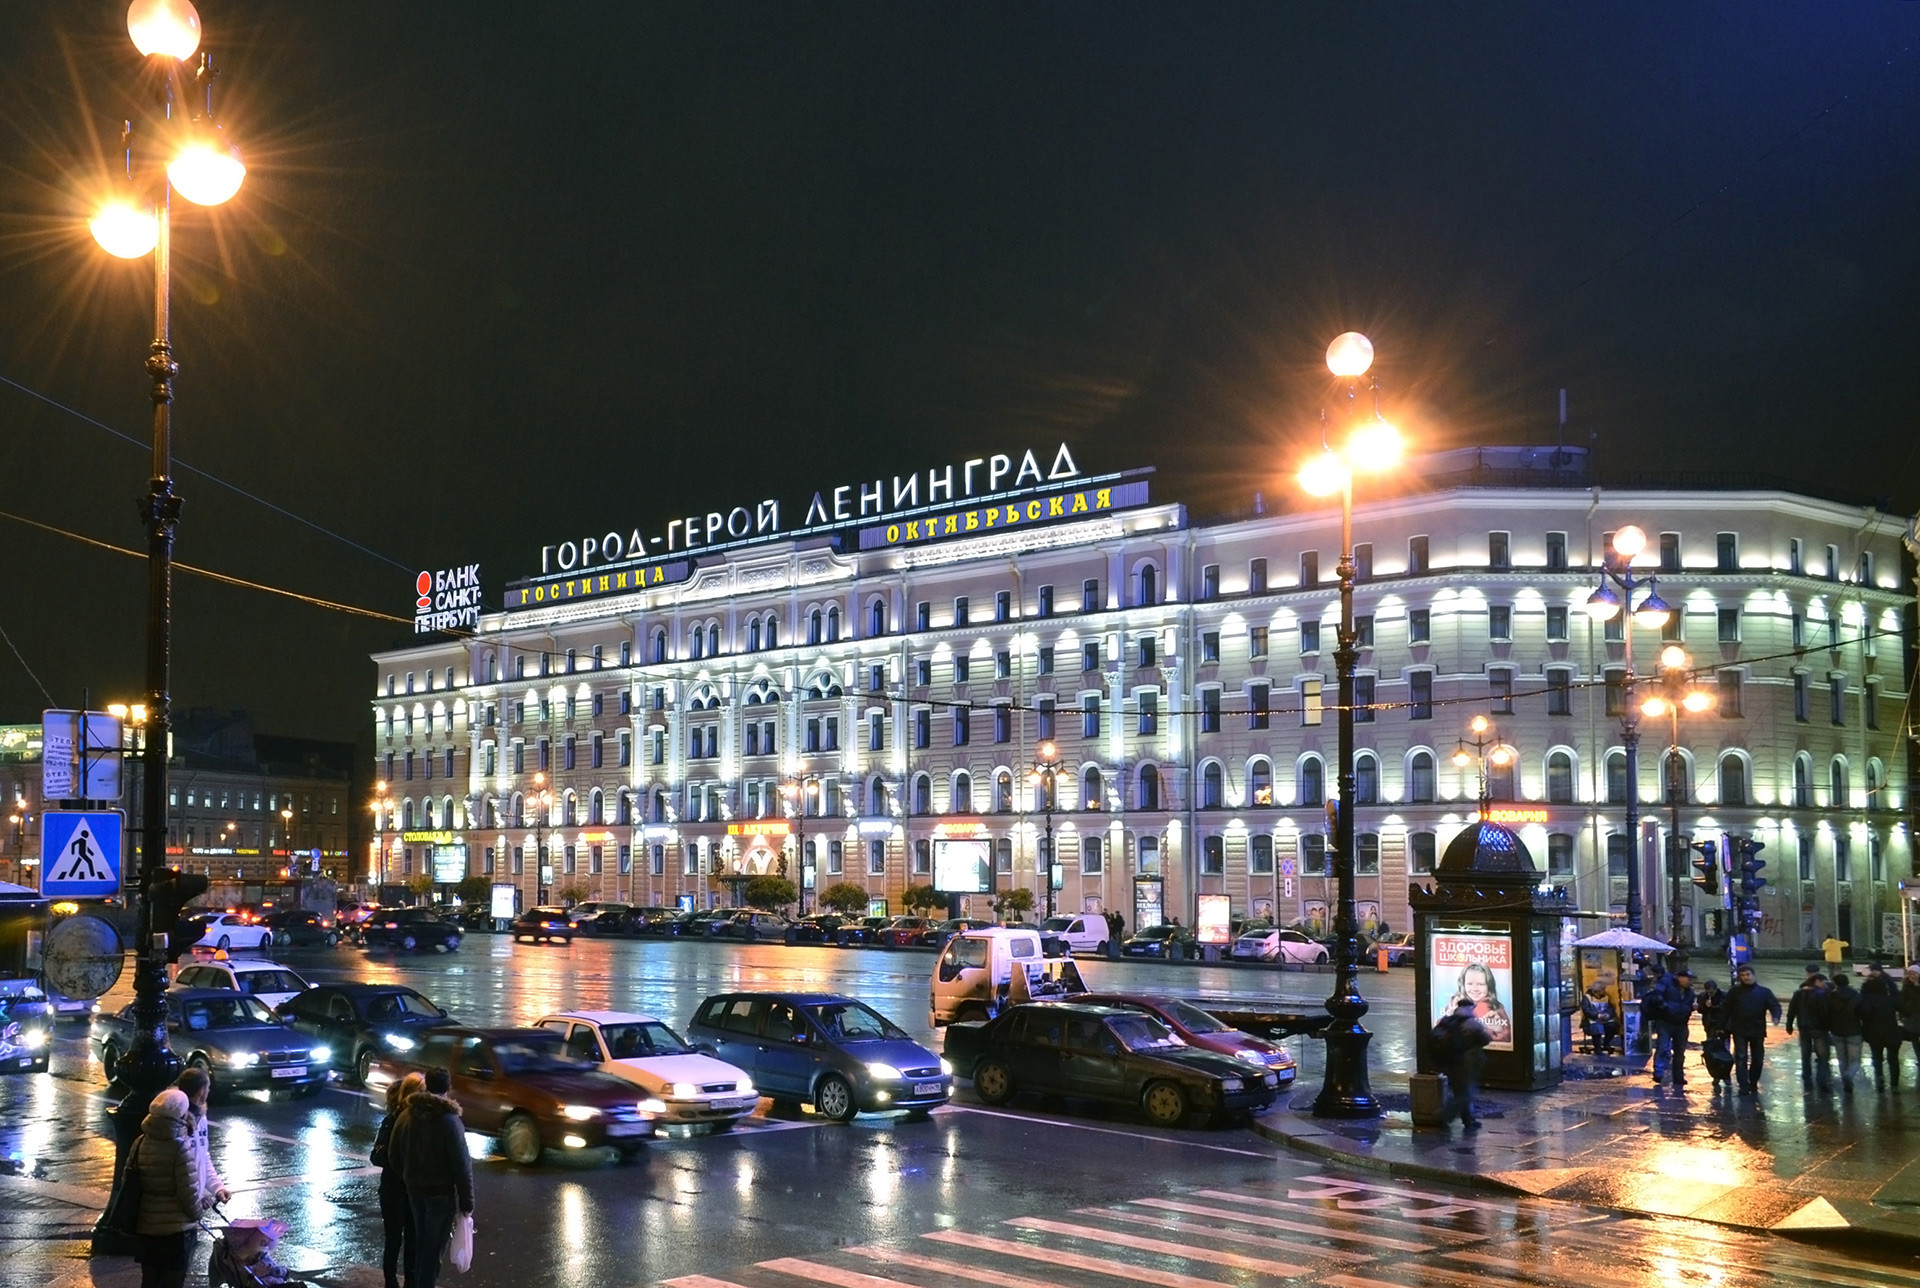 Oktyabrskaya hotel in St. Petersburg. The sign tells 